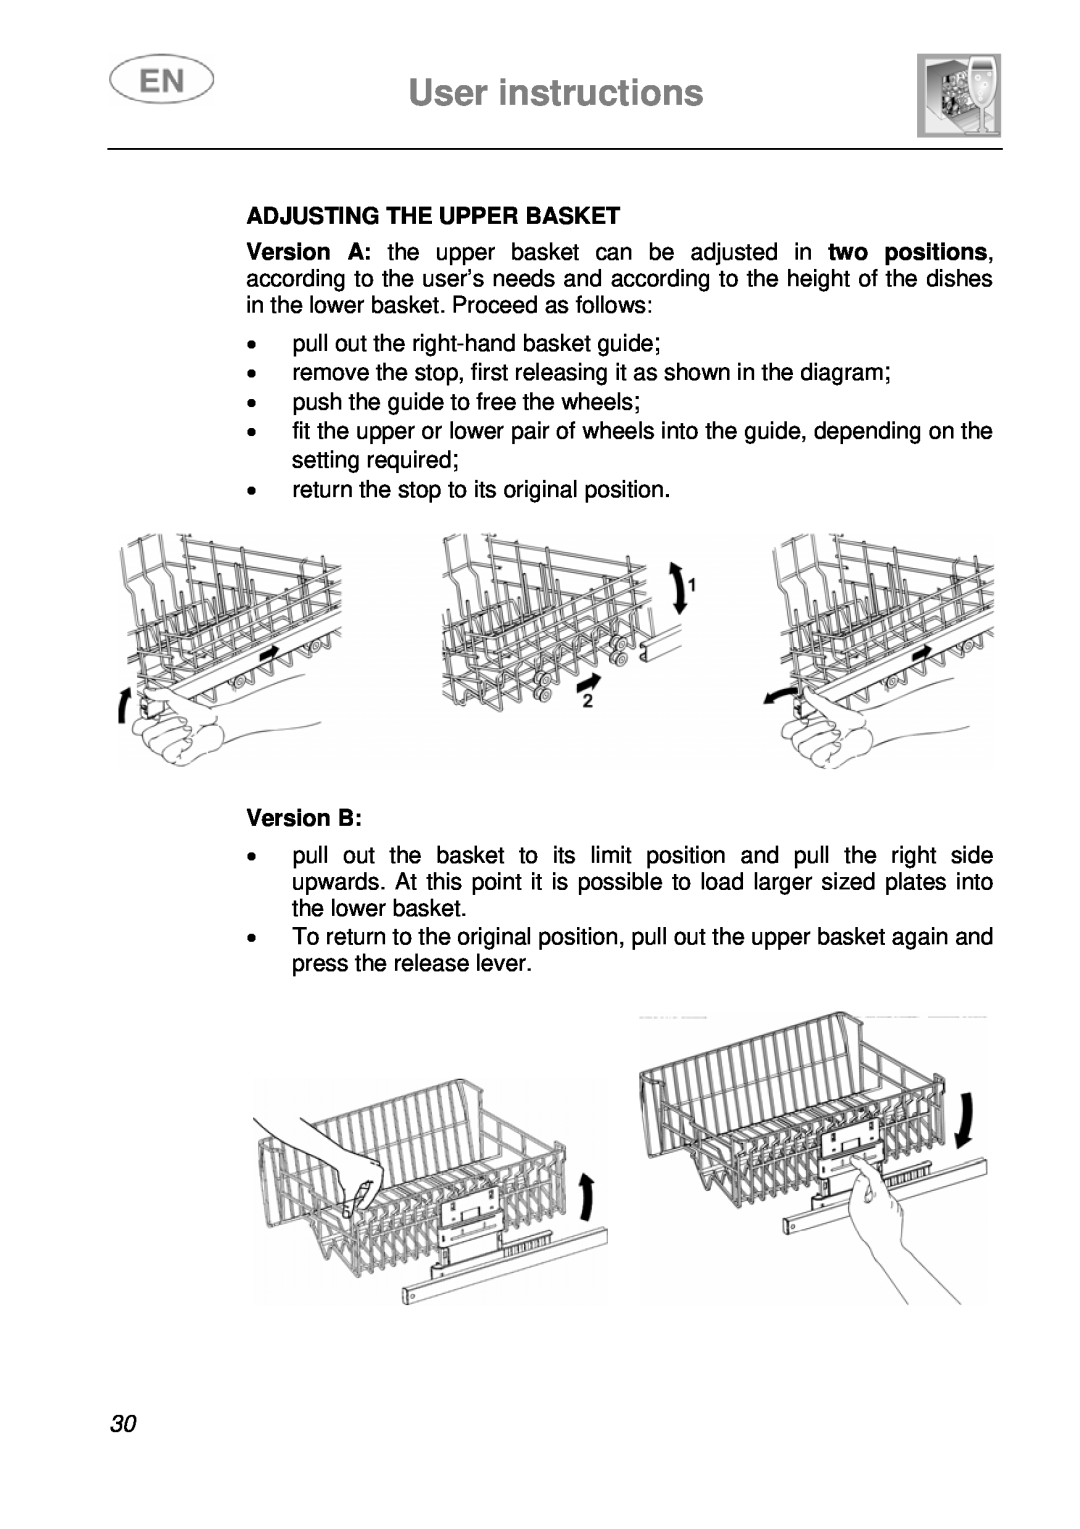 Smeg EN instruction manual Adjusting The Upper Basket, Version B, User instructions 